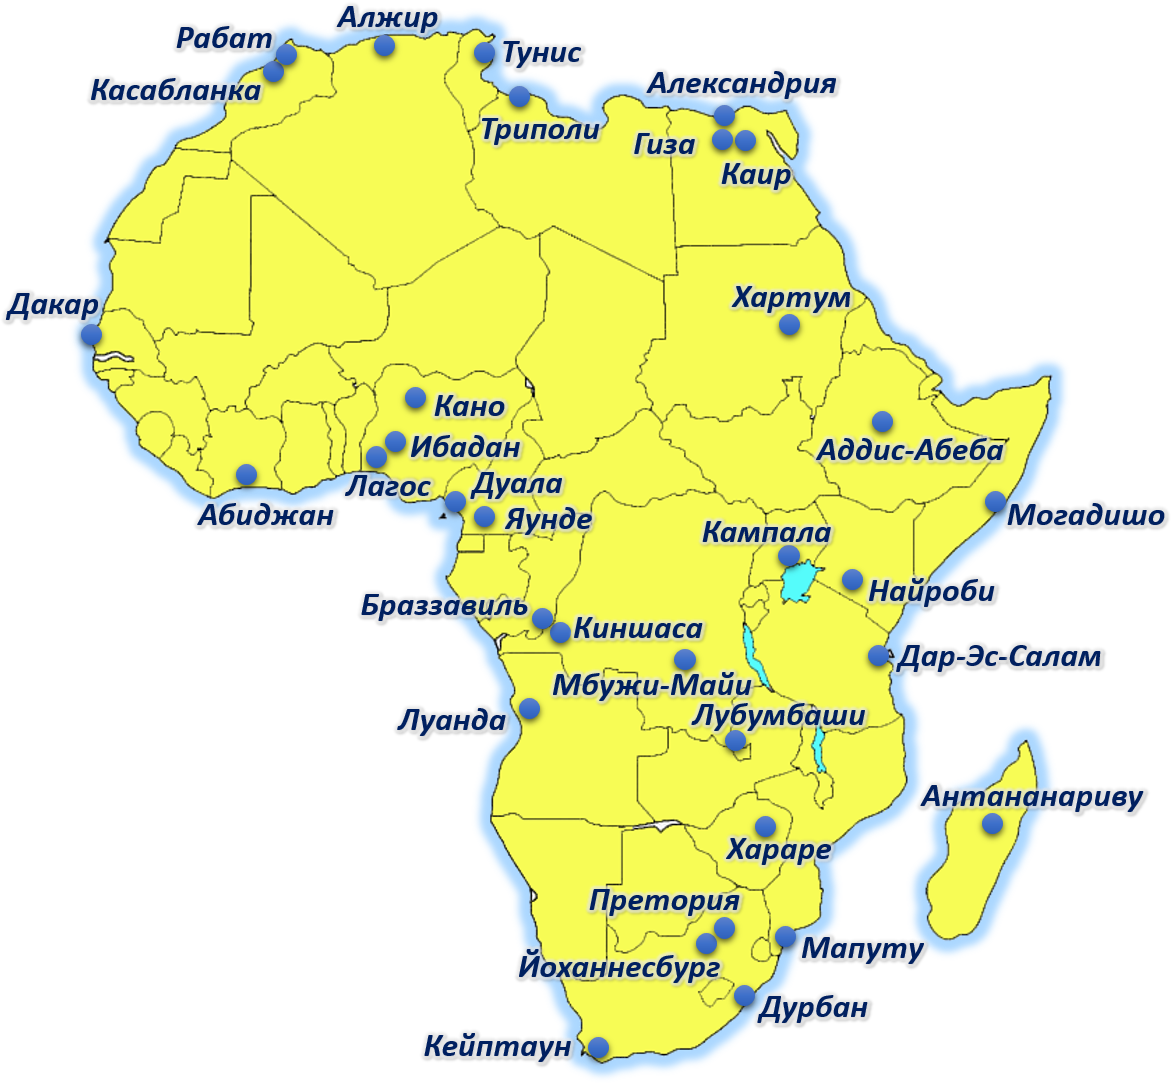 Географические координаты луанда. Крупнейшие города Африки на карте. Крупнейшие морские Порты Африки на карте. Порты Африки на карте. Йоханнесбург на карте Африки.